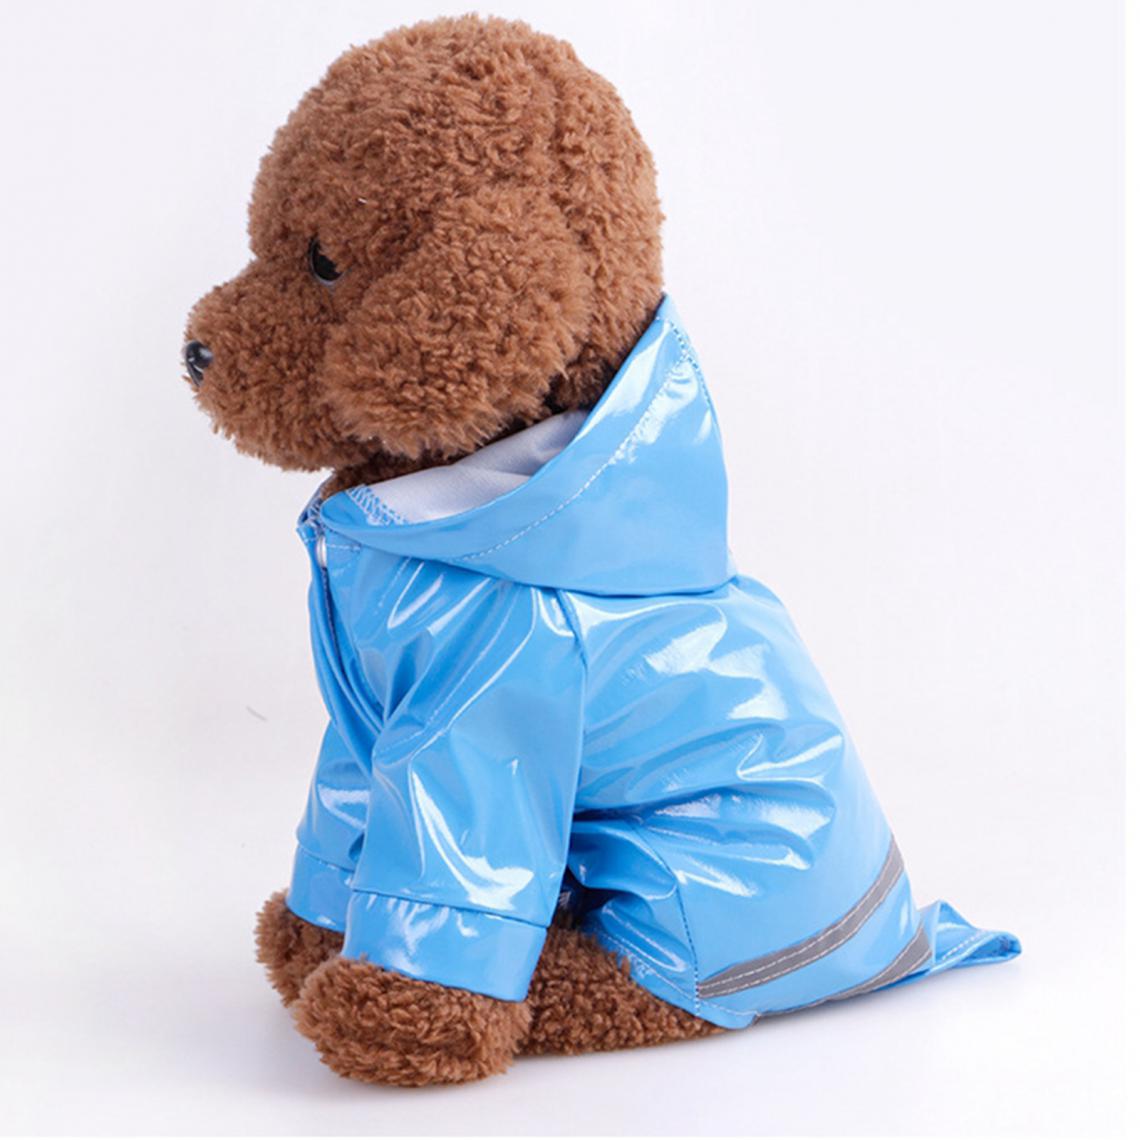 marque generique - Imperméable Pour Chien Avec Capuche Veste Réfléchissante Pour Chien Imperméable S- XL Bleu S - Vêtement pour chien